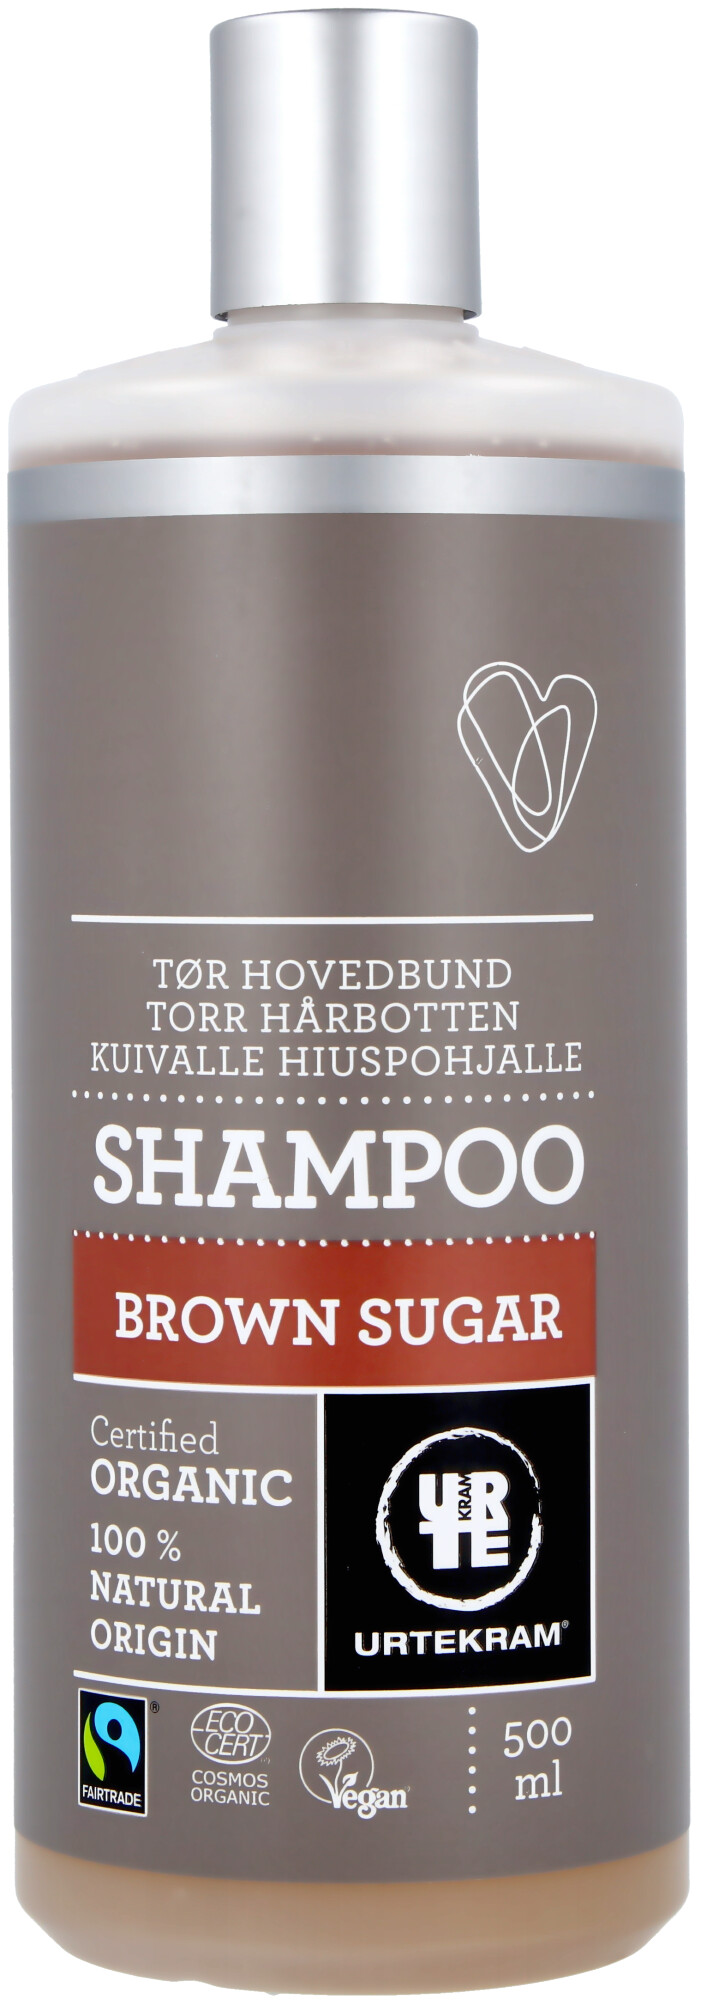 Urtekram Sugar Shampoo 500 lyko.com